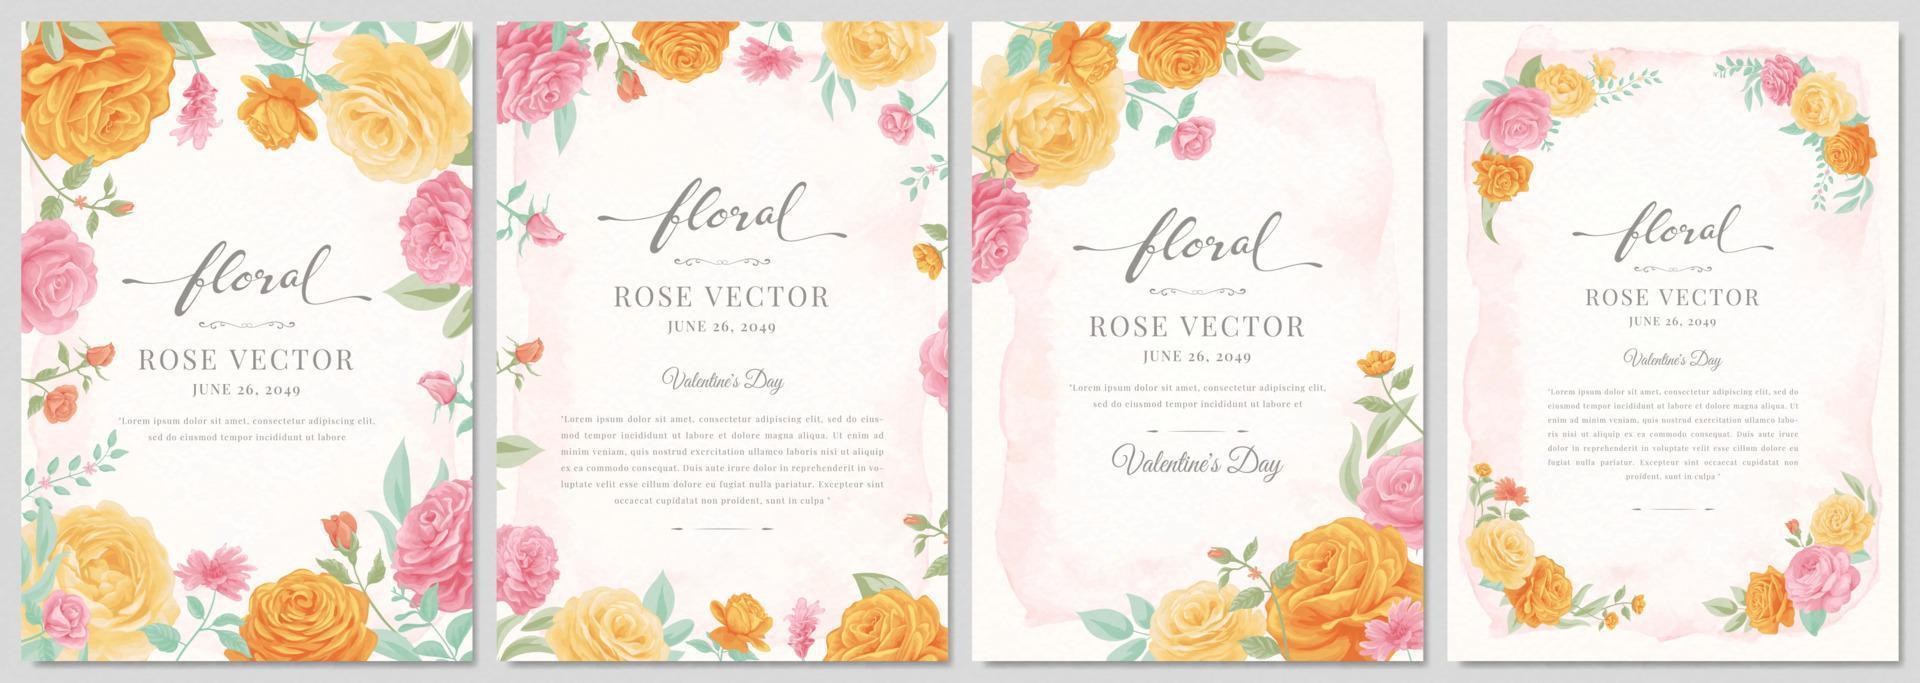 sammlung set schöne rose blume und botanische blatt digital gemalte illustration für liebe hochzeit valentinstag oder anordnung einladung design grußkarte vektor